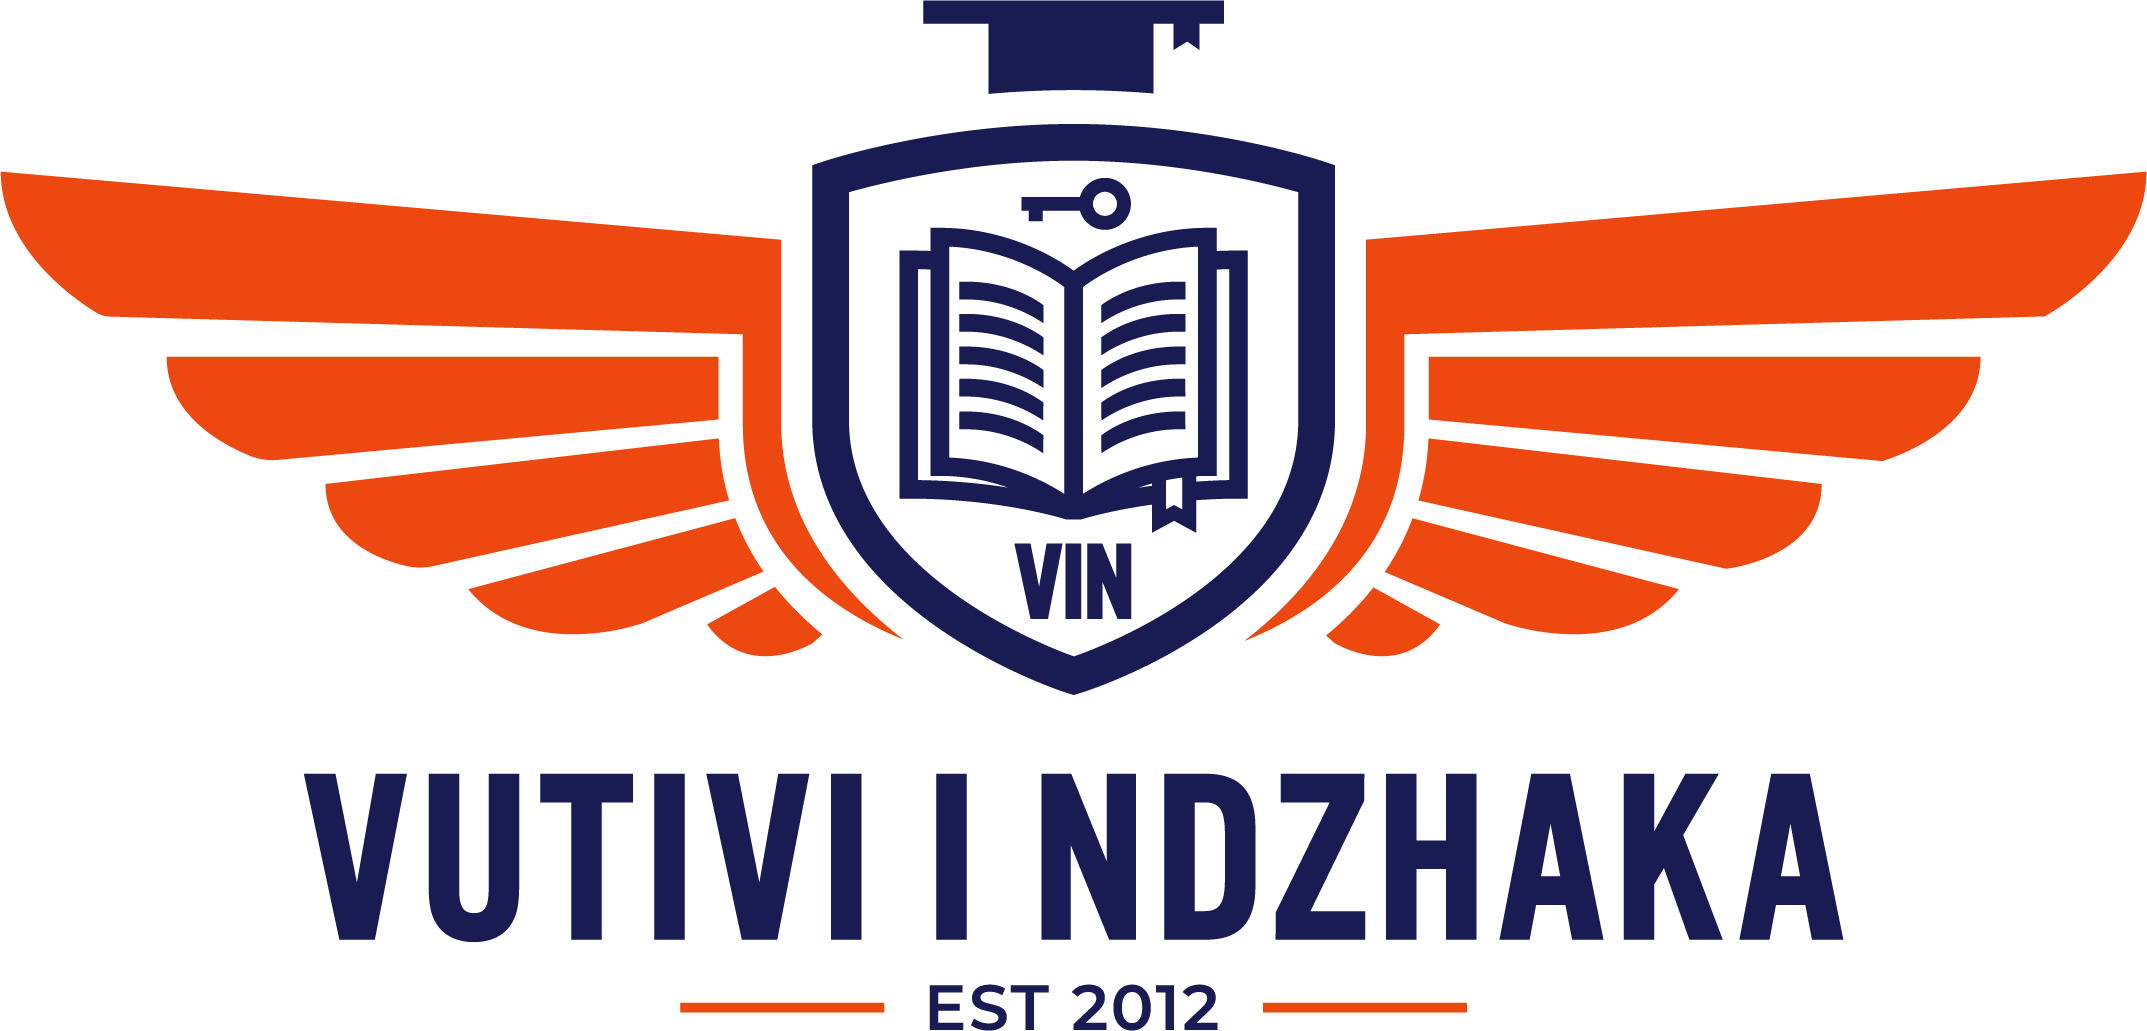 VIN Logo